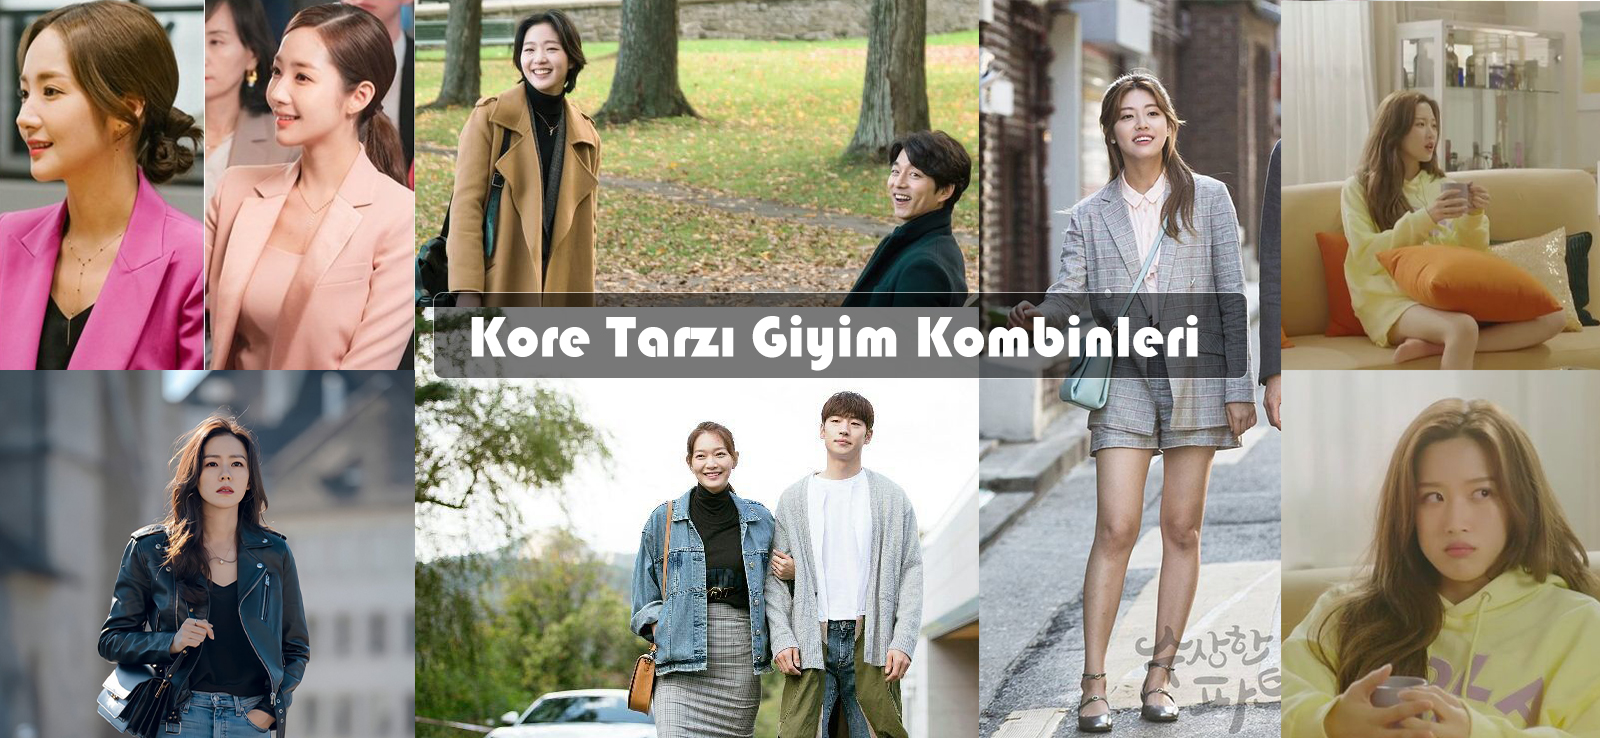 Kore Tarzı Giyim Kombinleri